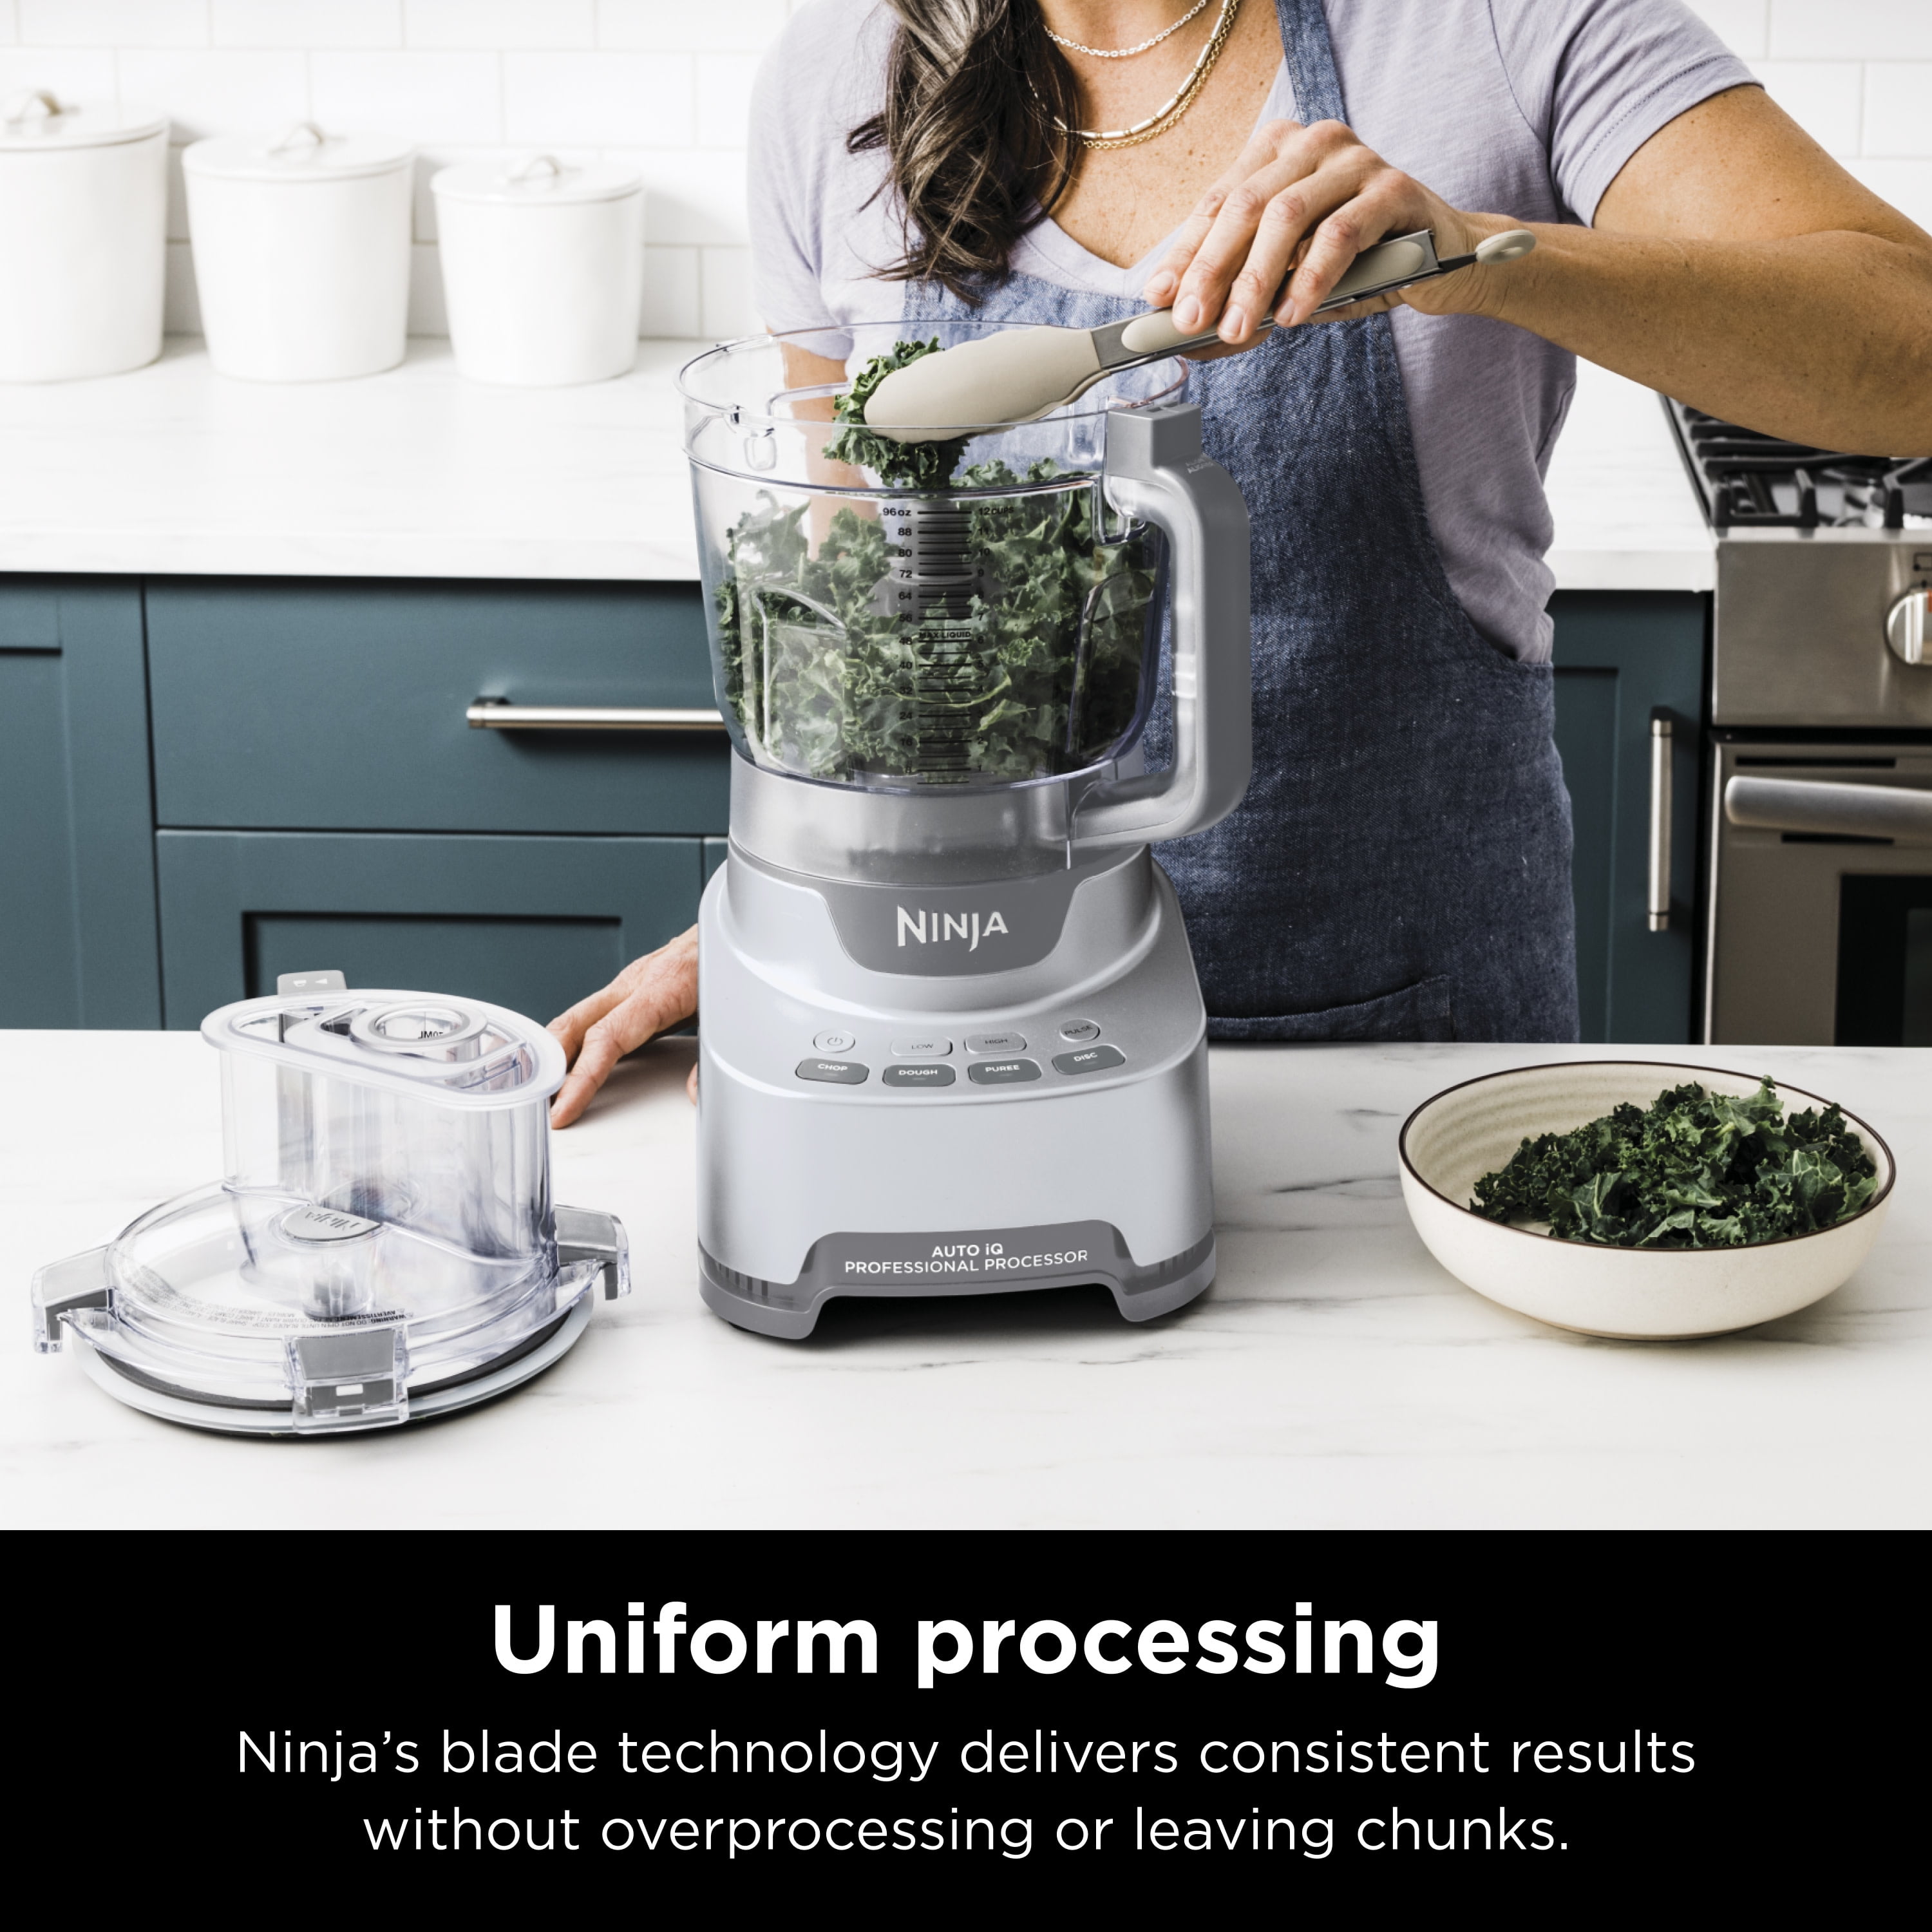 Ninja® Professional XL Food Processor Food Processors - Ninja